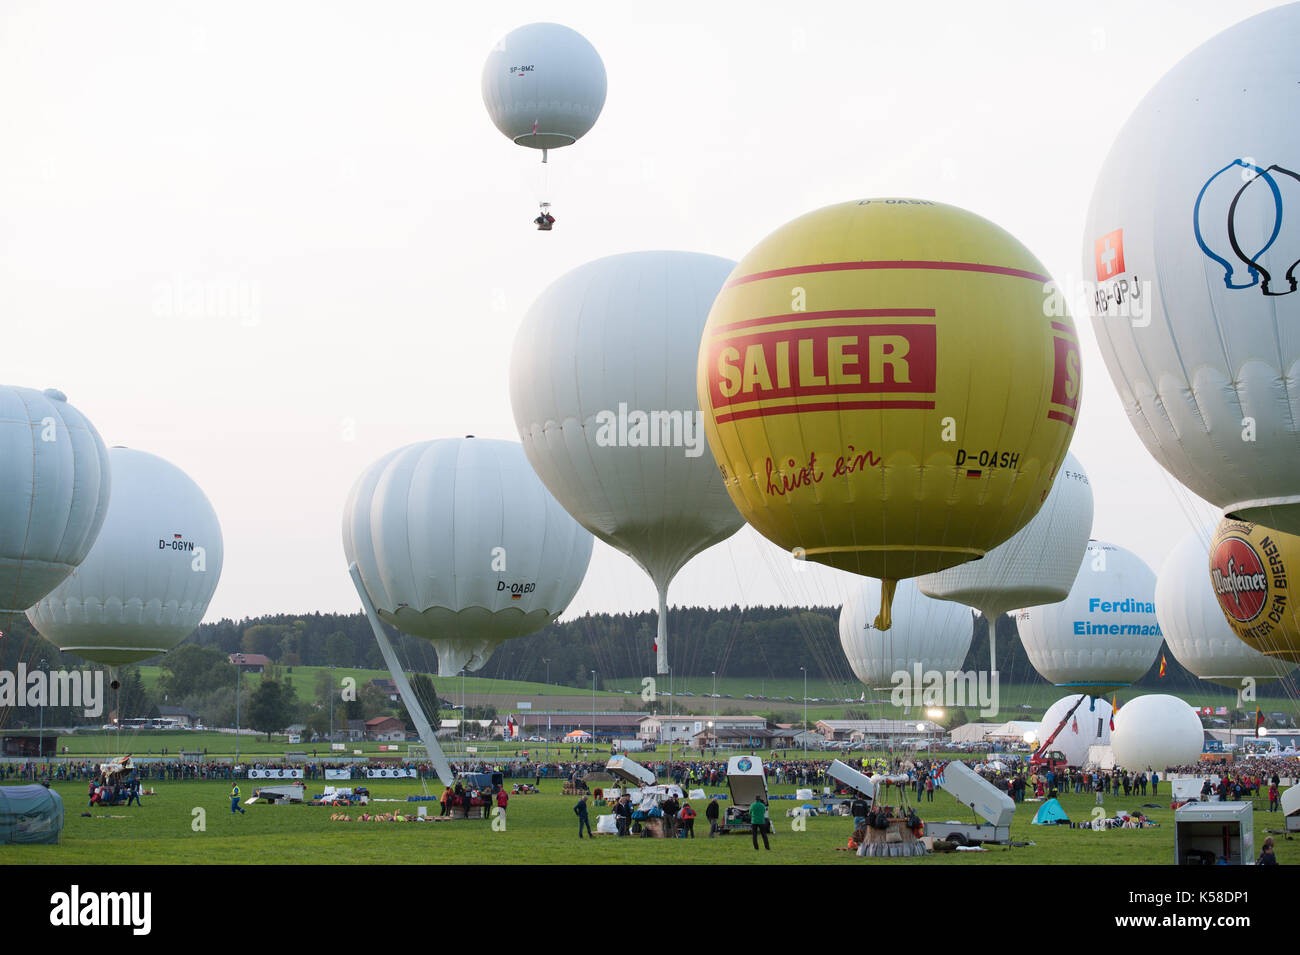 Ballone starten zu diesem Jahre Gordon Bennett Ballon-wettbewerb von  Gruyères, Schweiz. Für die nächsten drei Tage die Winde entscheiden, wohin die  Reise im Ballon trägt Stockfotografie - Alamy